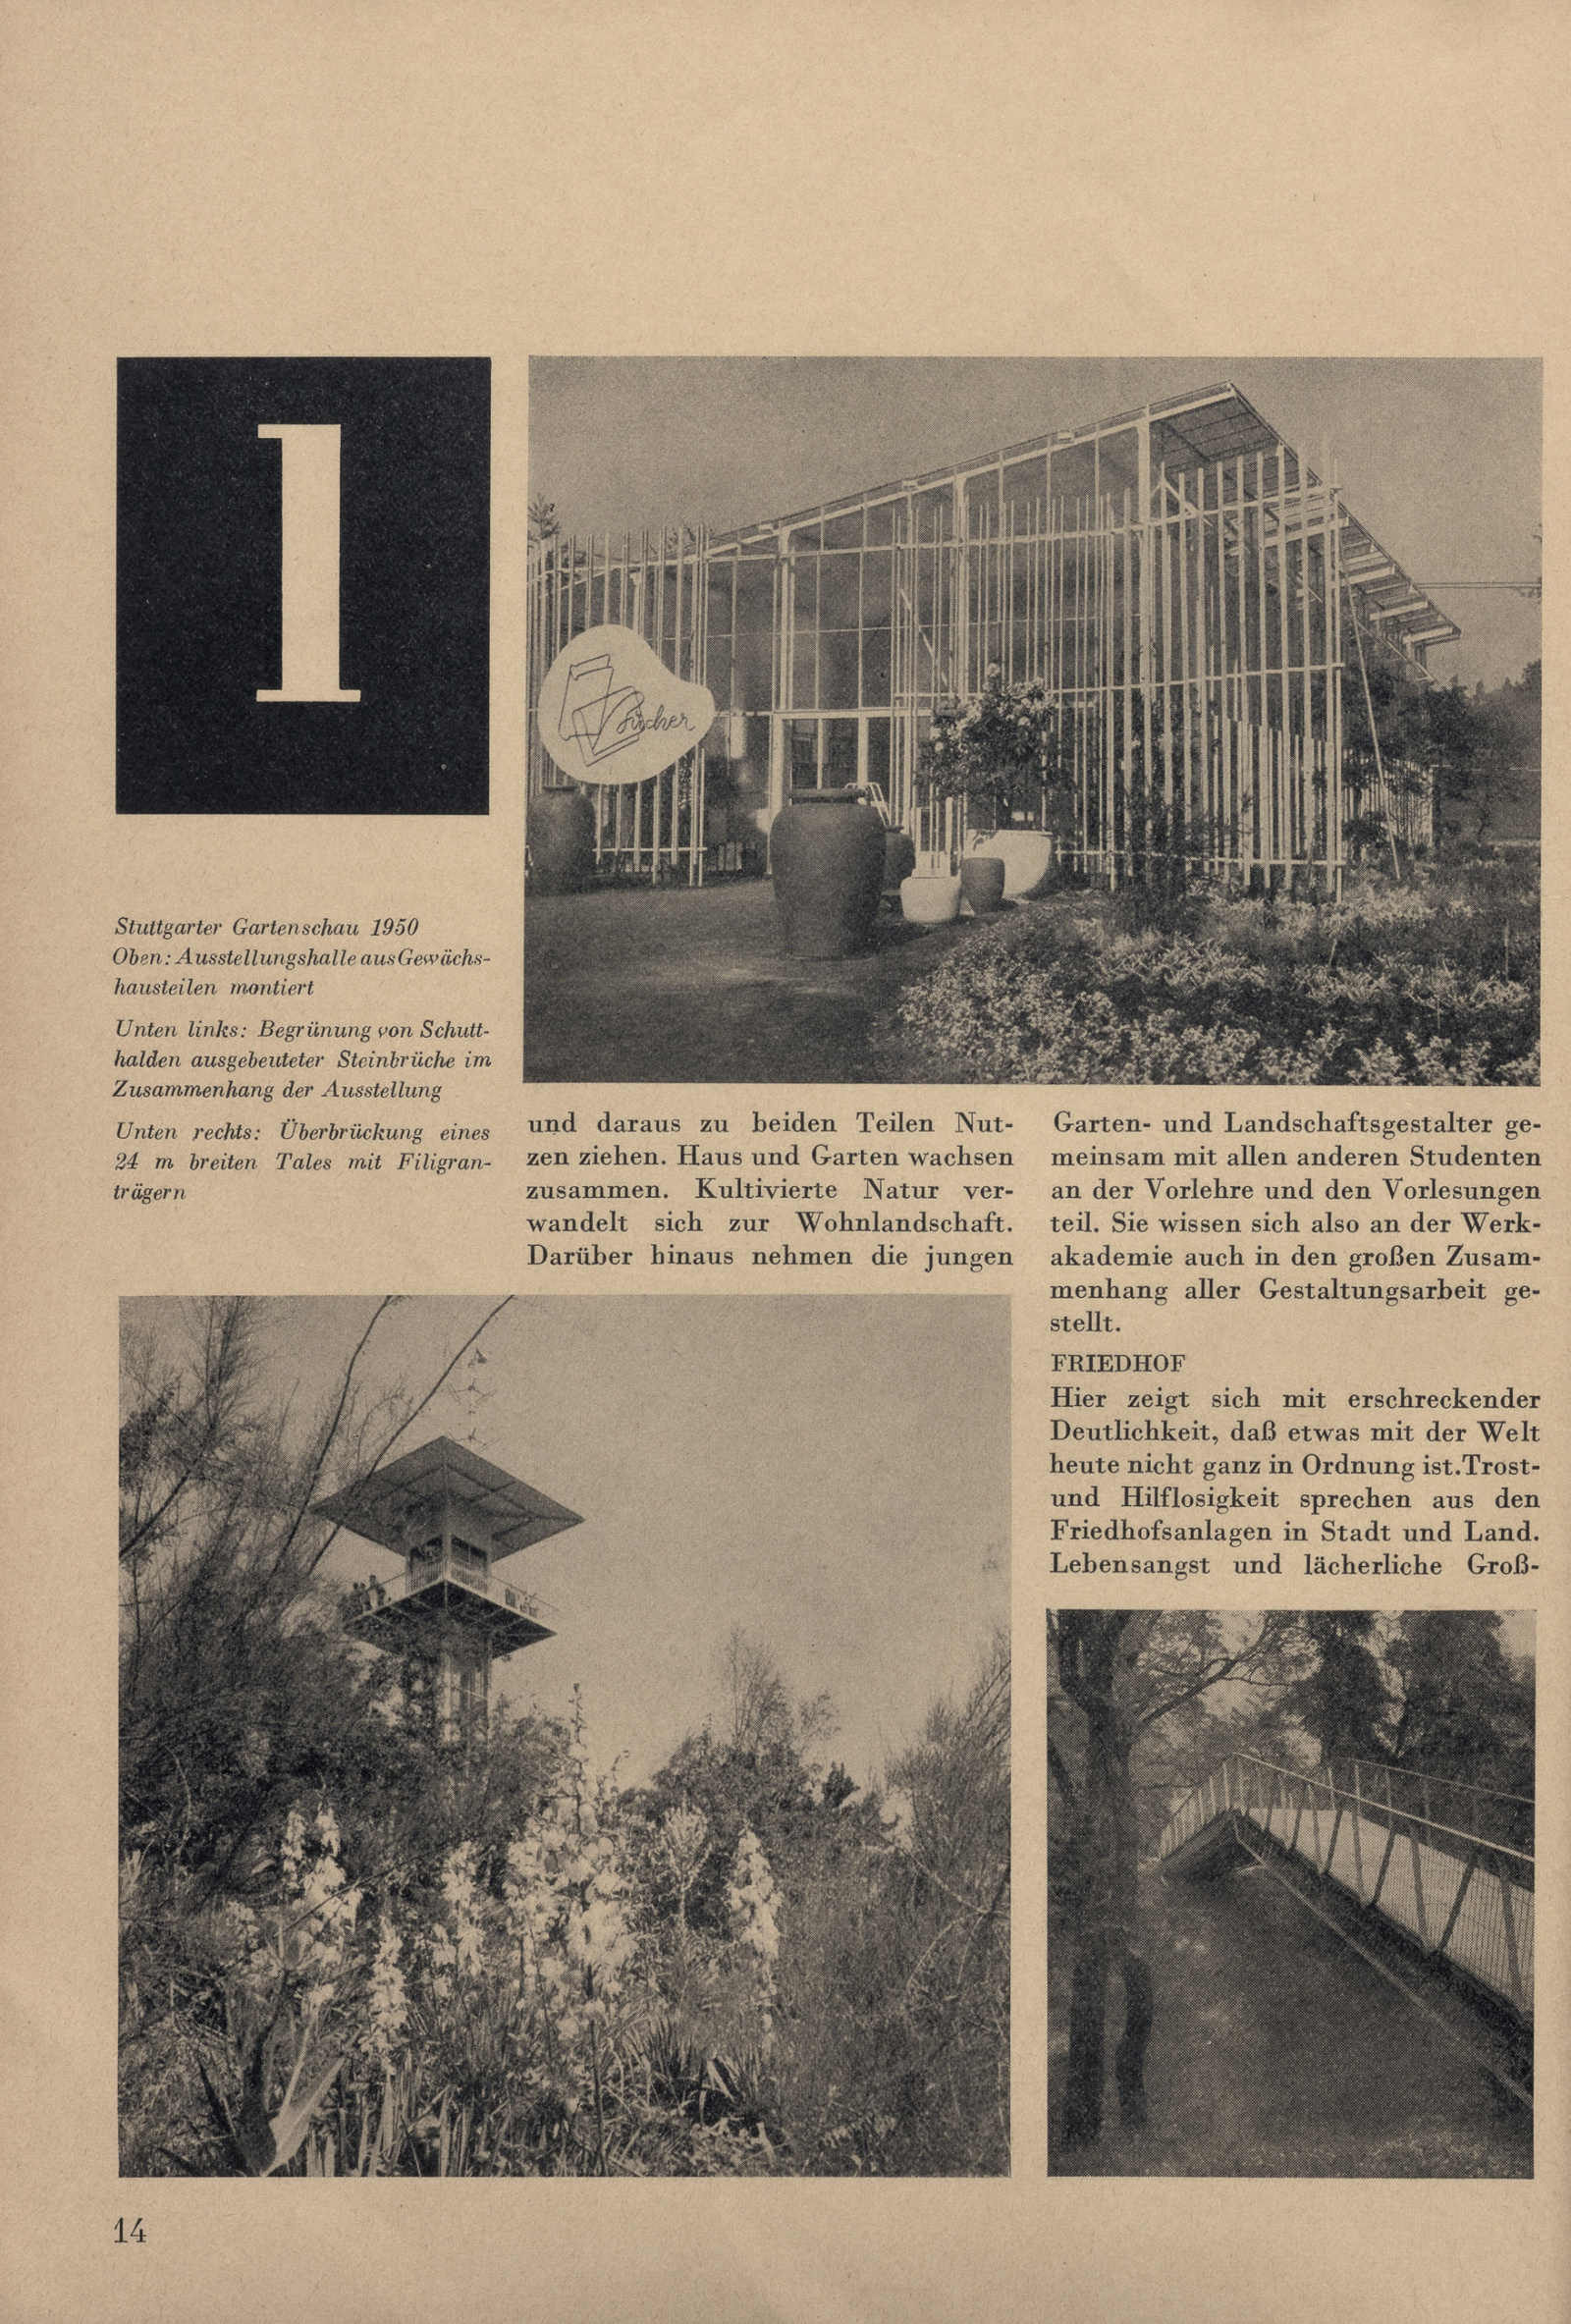 Landschaftsgestalter Inspirierend Bauhaus Ideas for the Kassel Werkakademie In the Postwar